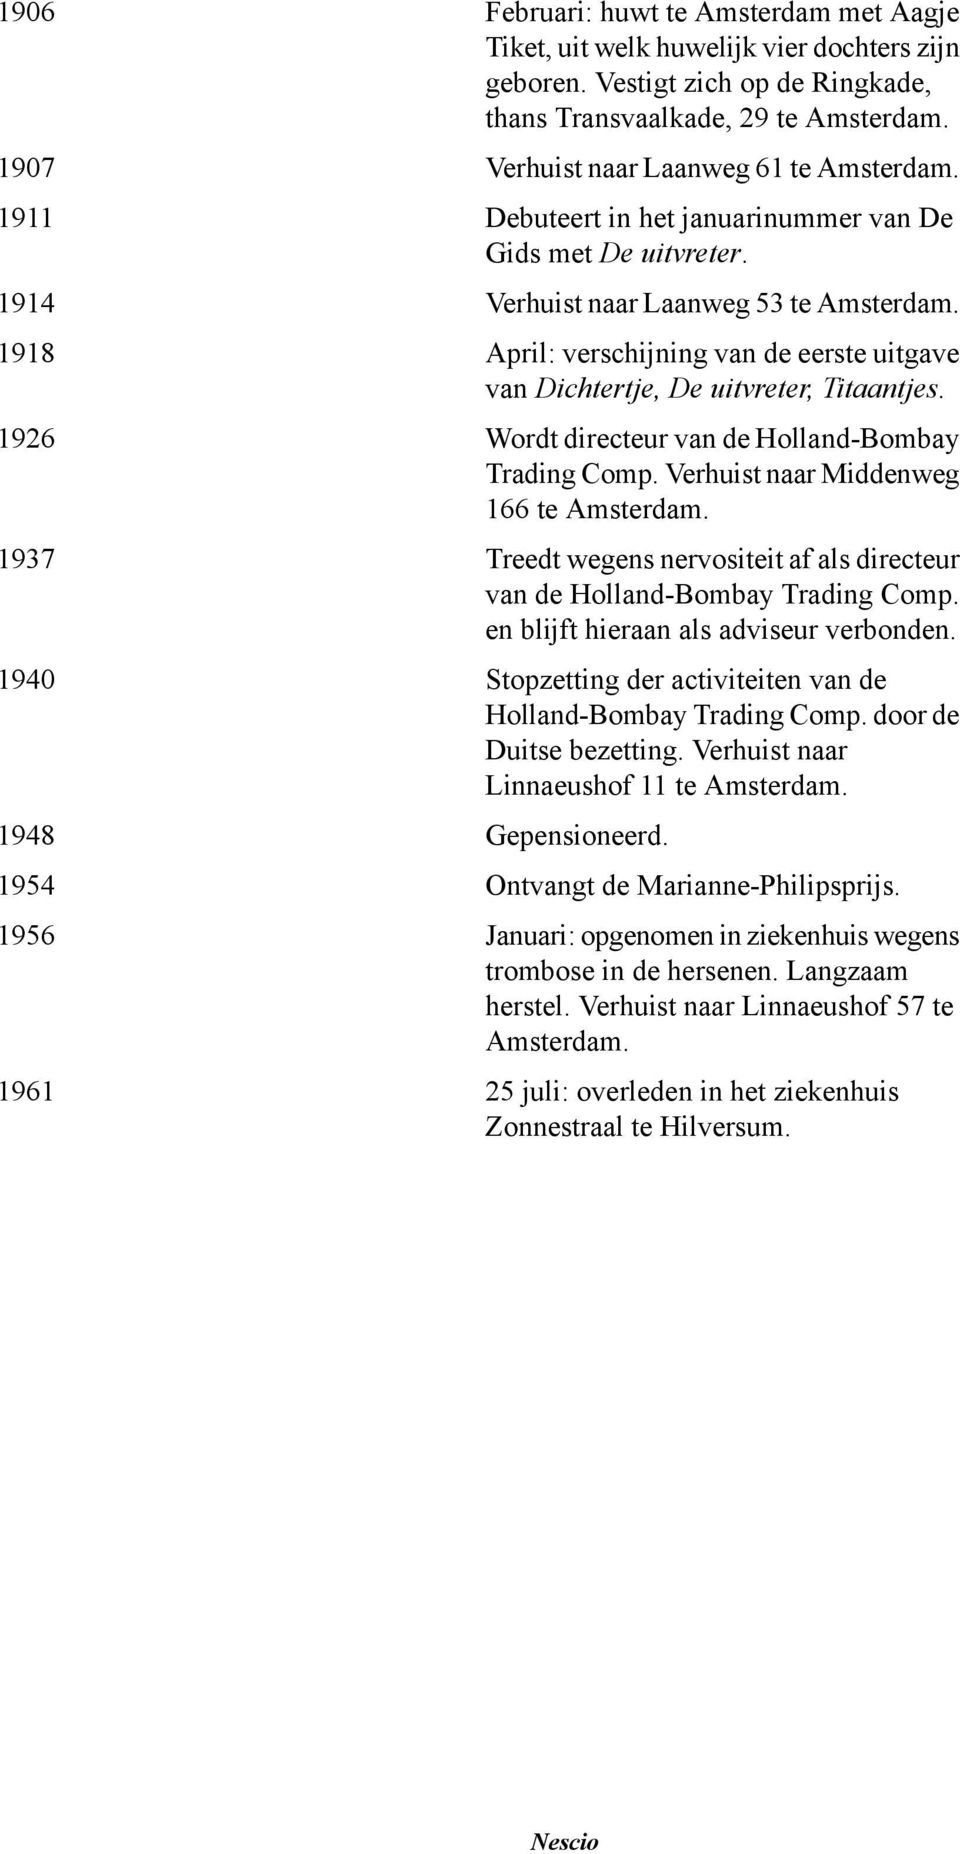 Verhuist naar Laanweg 53 te Amsterdam. April: verschijning van de eerste uitgave van Dichtertje, De uitvreter, Titaantjes. Wordt directeur van de Holland-Bombay Trading Comp.